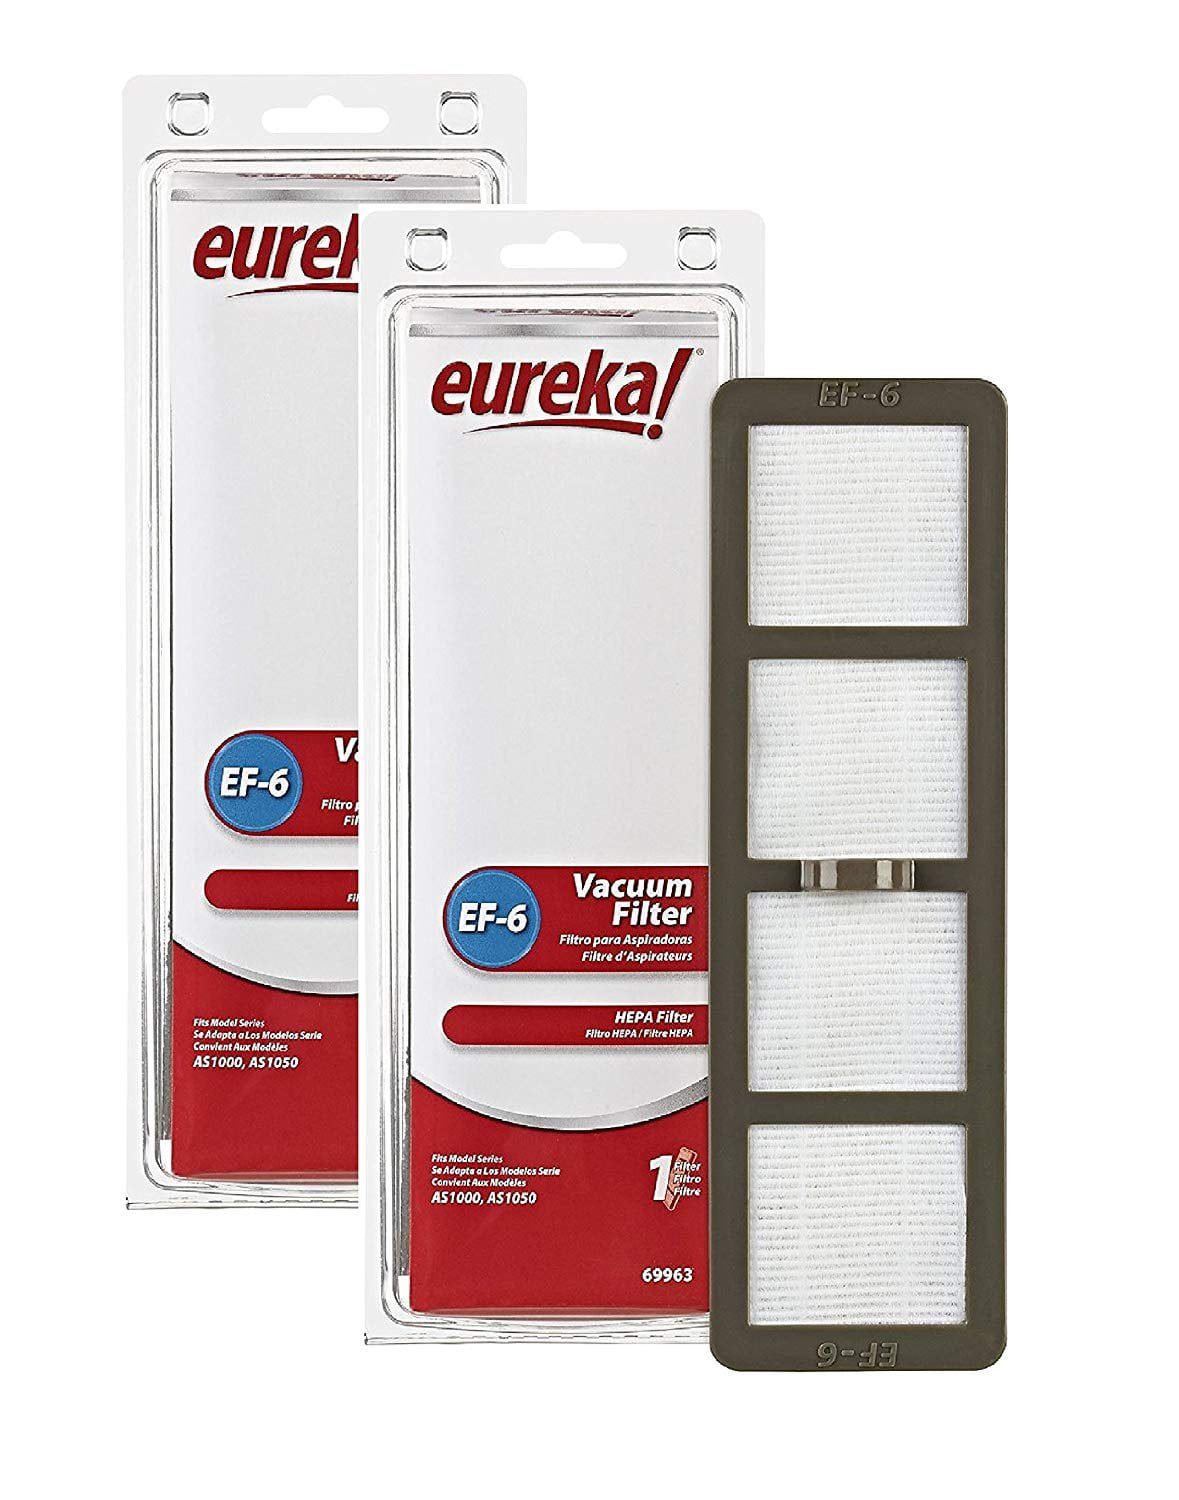 Genuine Eureka HEPA Vacuum Filter Ef-6 69963 for sale online 